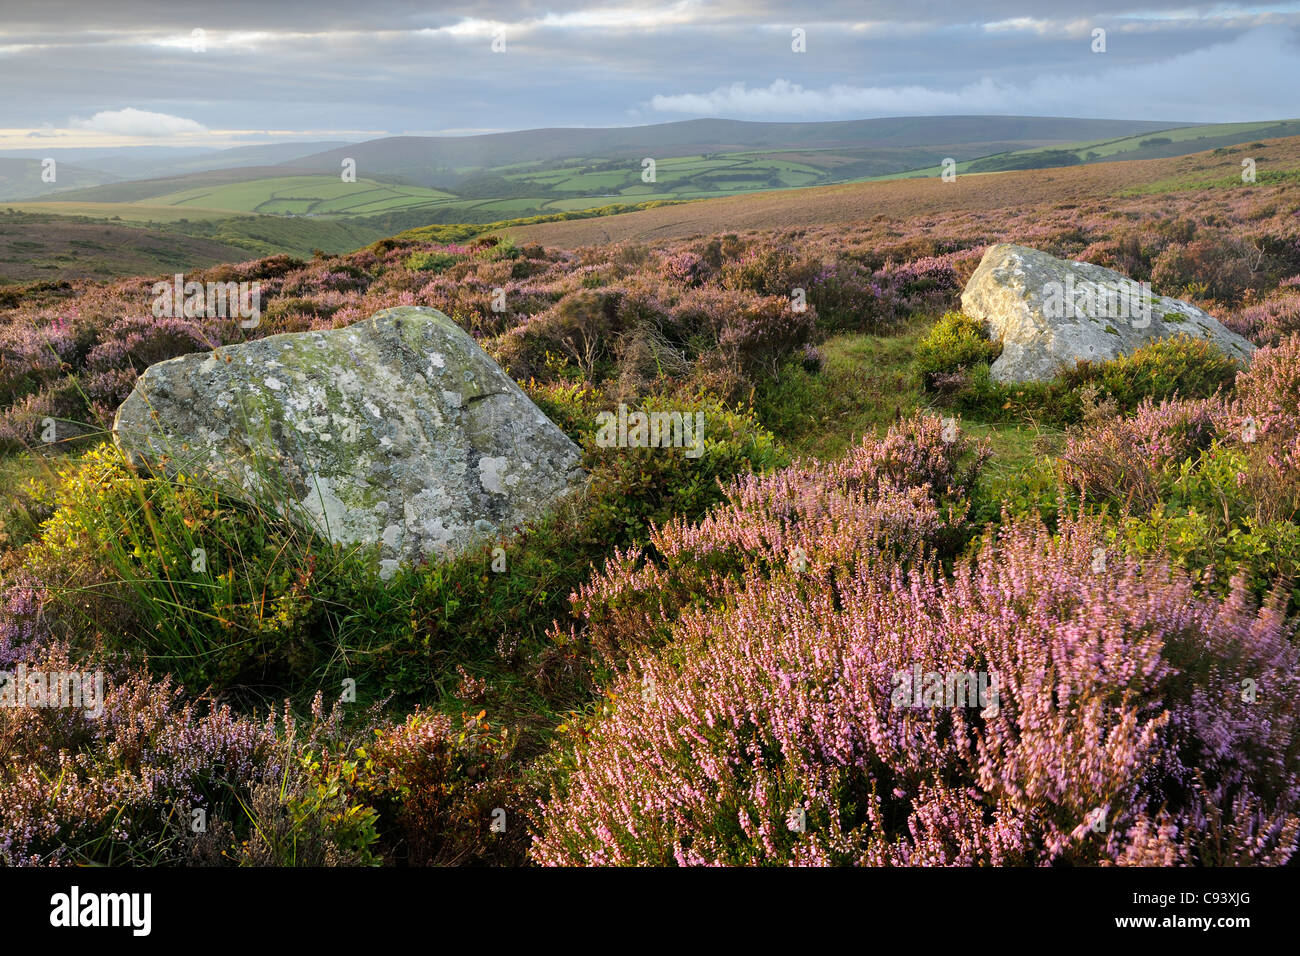 Ein paar Menhire, bekannt als Whit Steinen, Porlock gemeinsame umgeben von blühender Heide. Exmoor, Großbritannien. Stockfoto